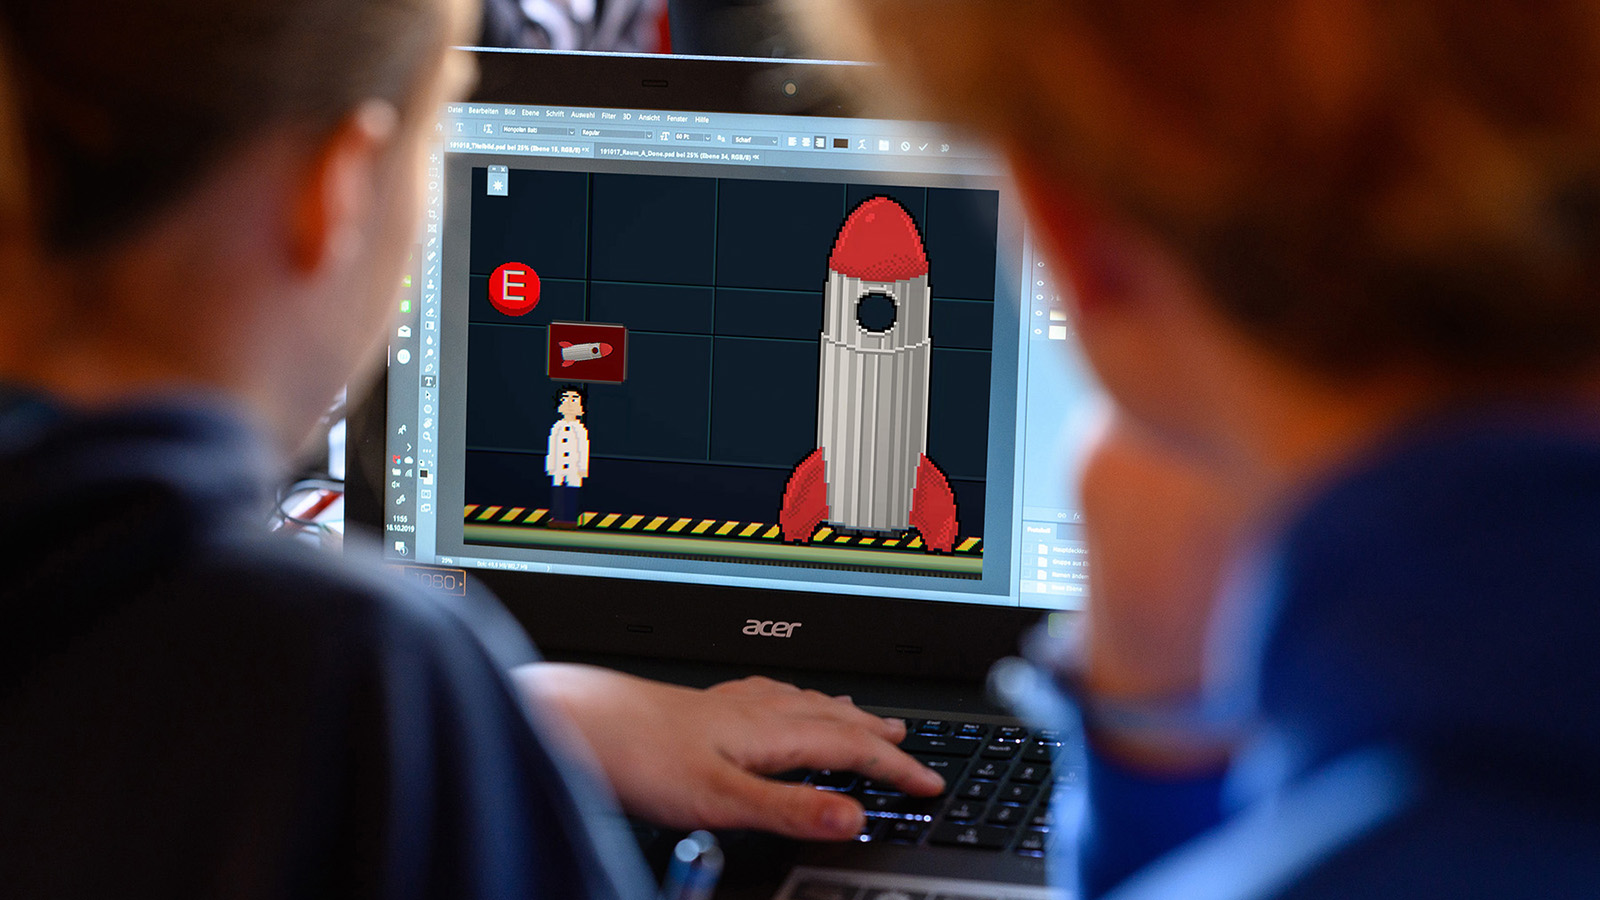 Von hinten: Zwei Jugendliche arbeiten konzentriert an einem Laptop, auf dem ein Bild in Pixelgrafik zu sehen ist.